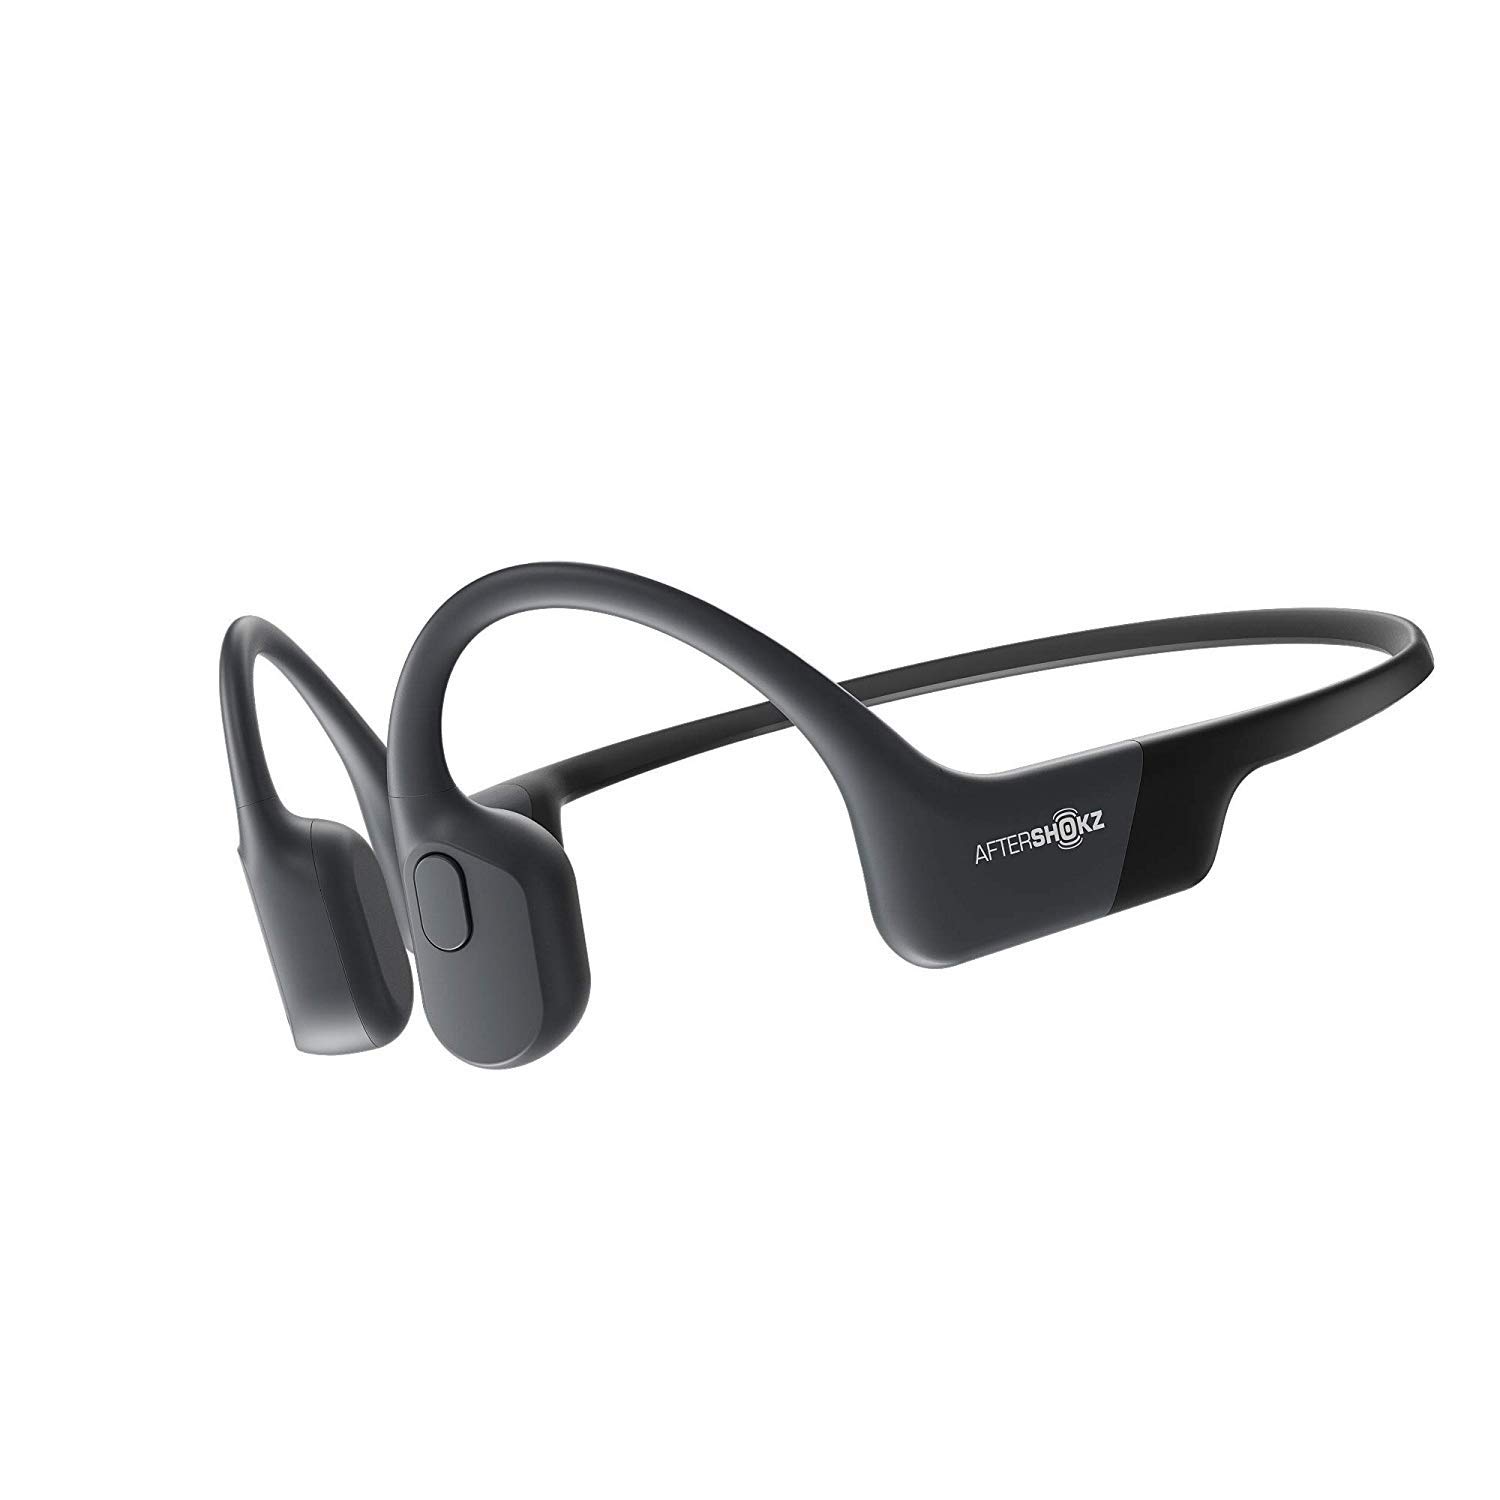  Aftershokz Aeropex - Słuchawki sportowe z otwartym uchem Bluetooth na przewodnictwo kostne - Odporne na pot Bezprzewodowe słuchawki do treningów i biegania - Wbudowany mikrofon - Z paskiem sportowym...